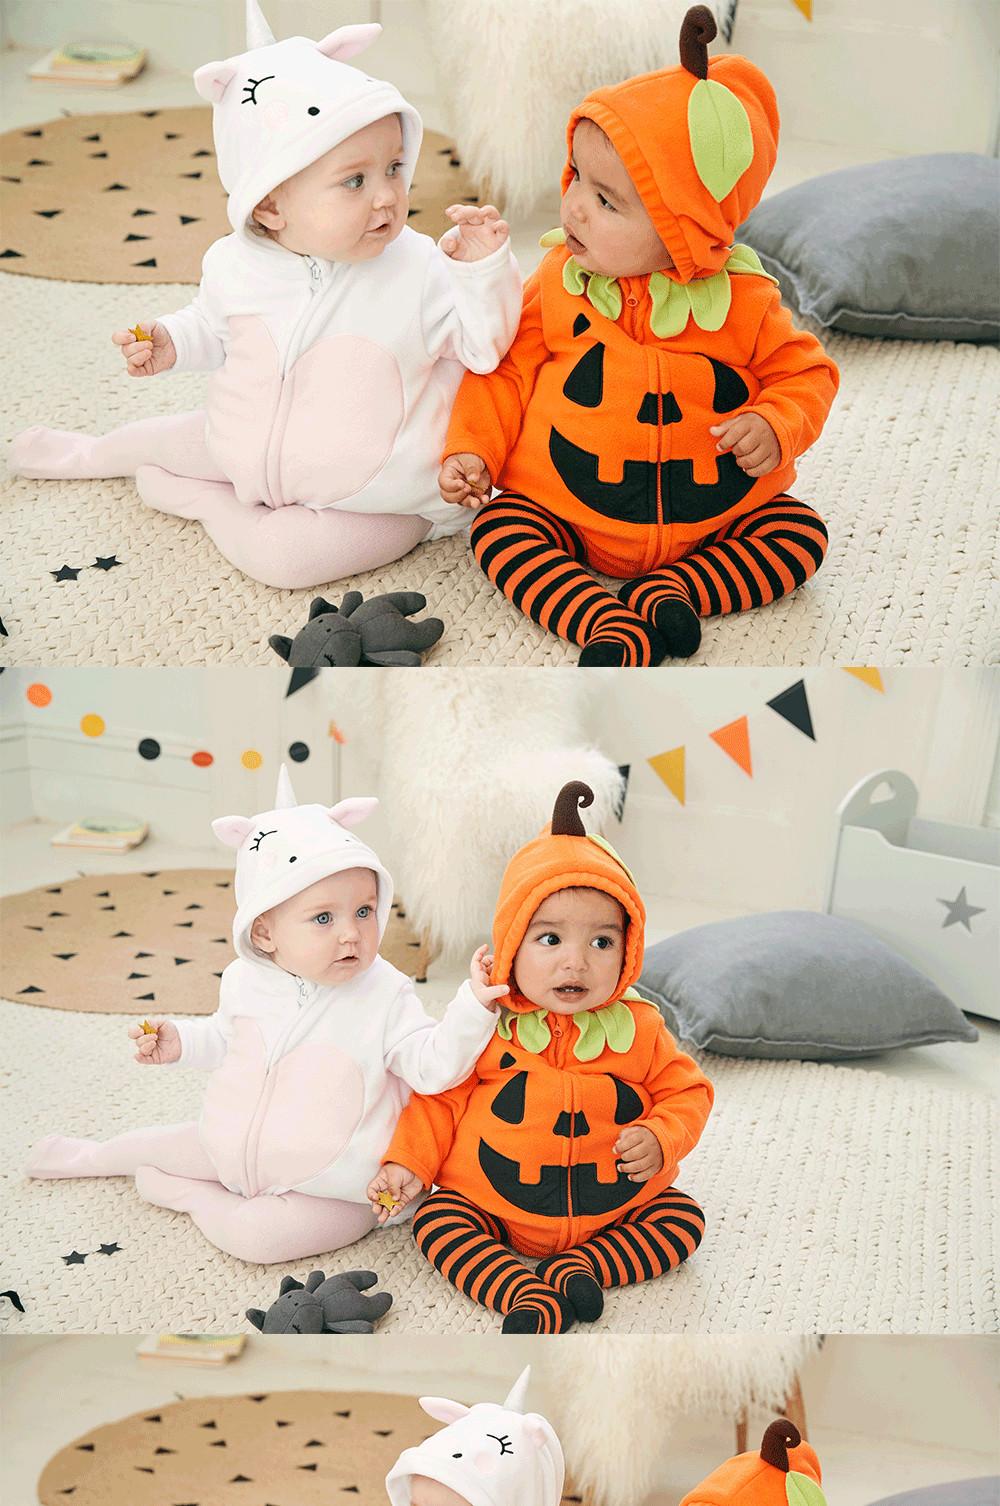 Gladys hazlo plano Ensangrentado Disfraces de Halloween para bebés | Primark